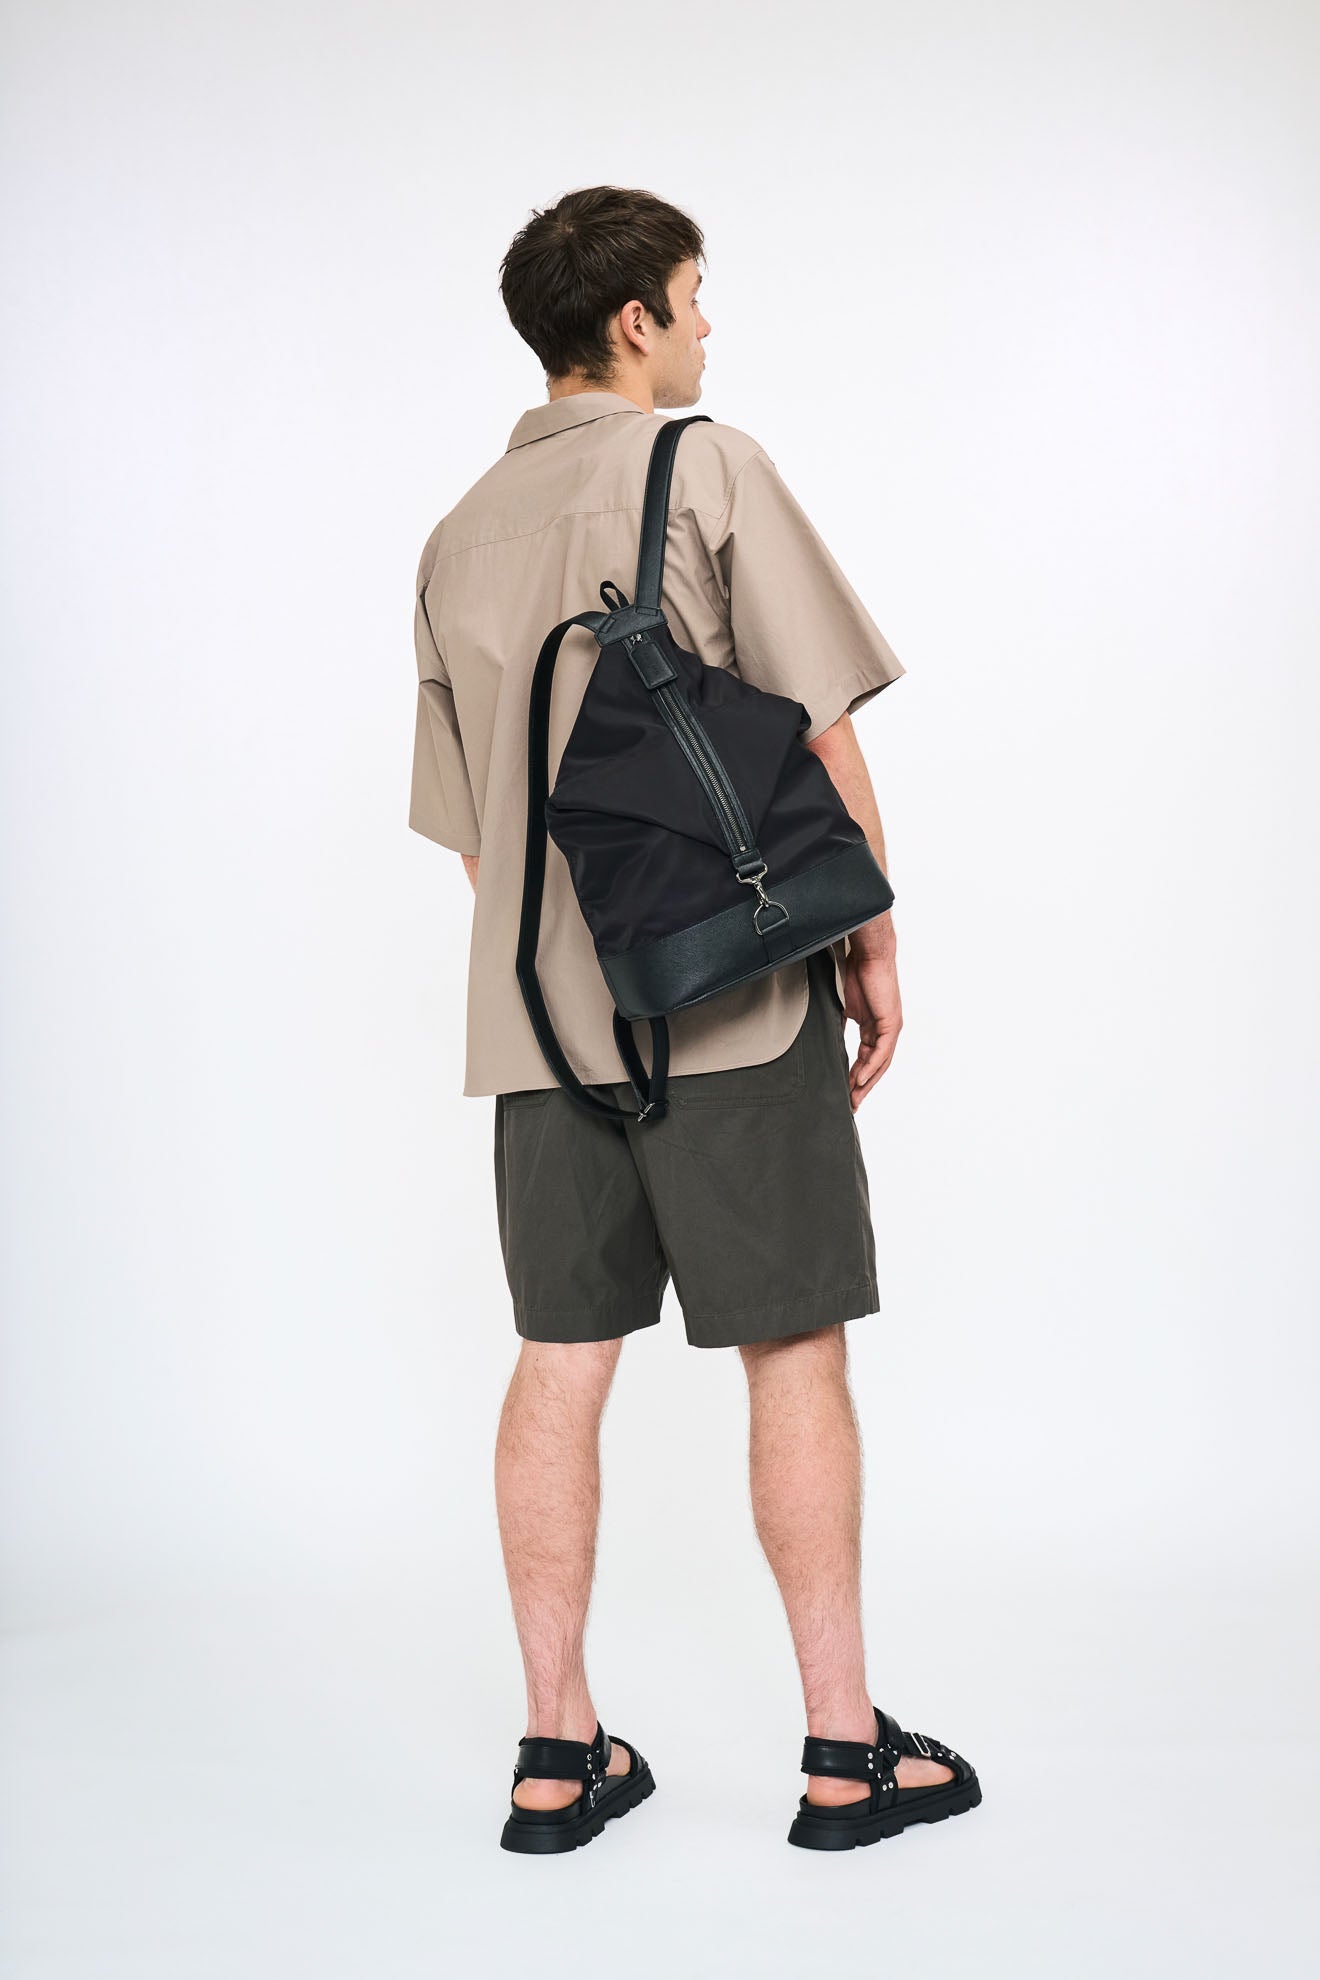 “Oni Veggie” x Mushroom Leather Daypack